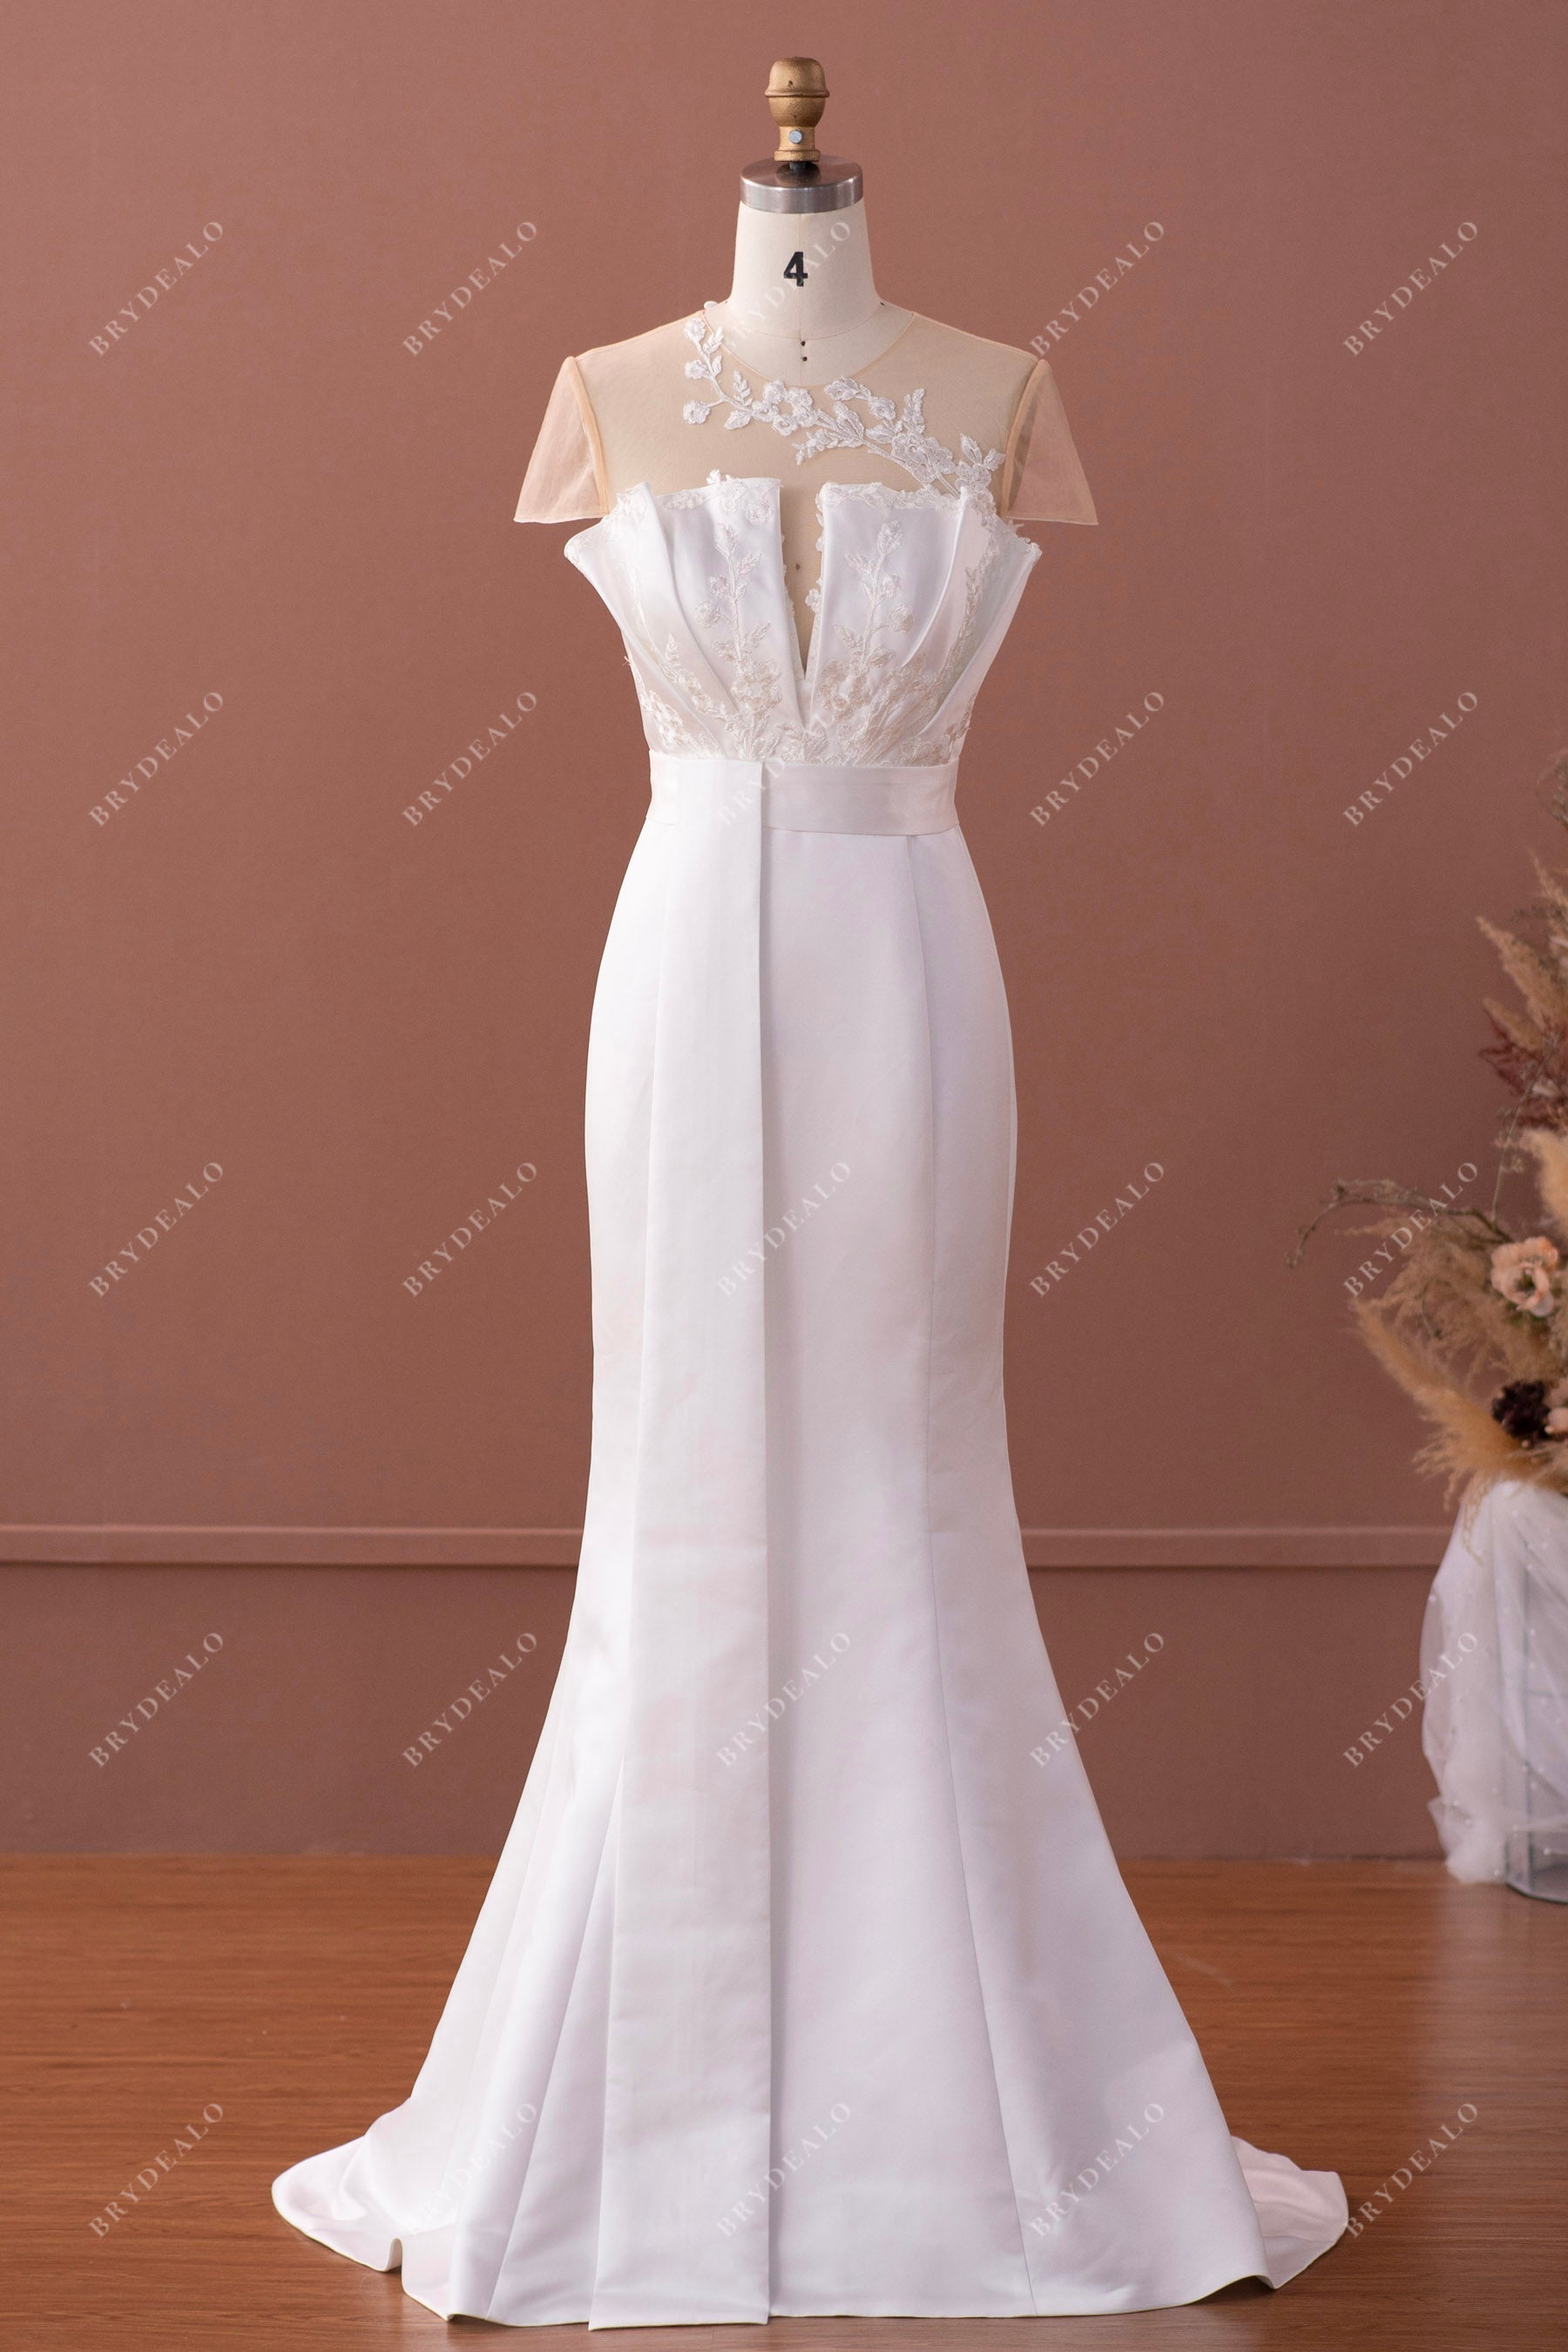 Designer Ruffled Applique Satin Mermaid Bridal Gown